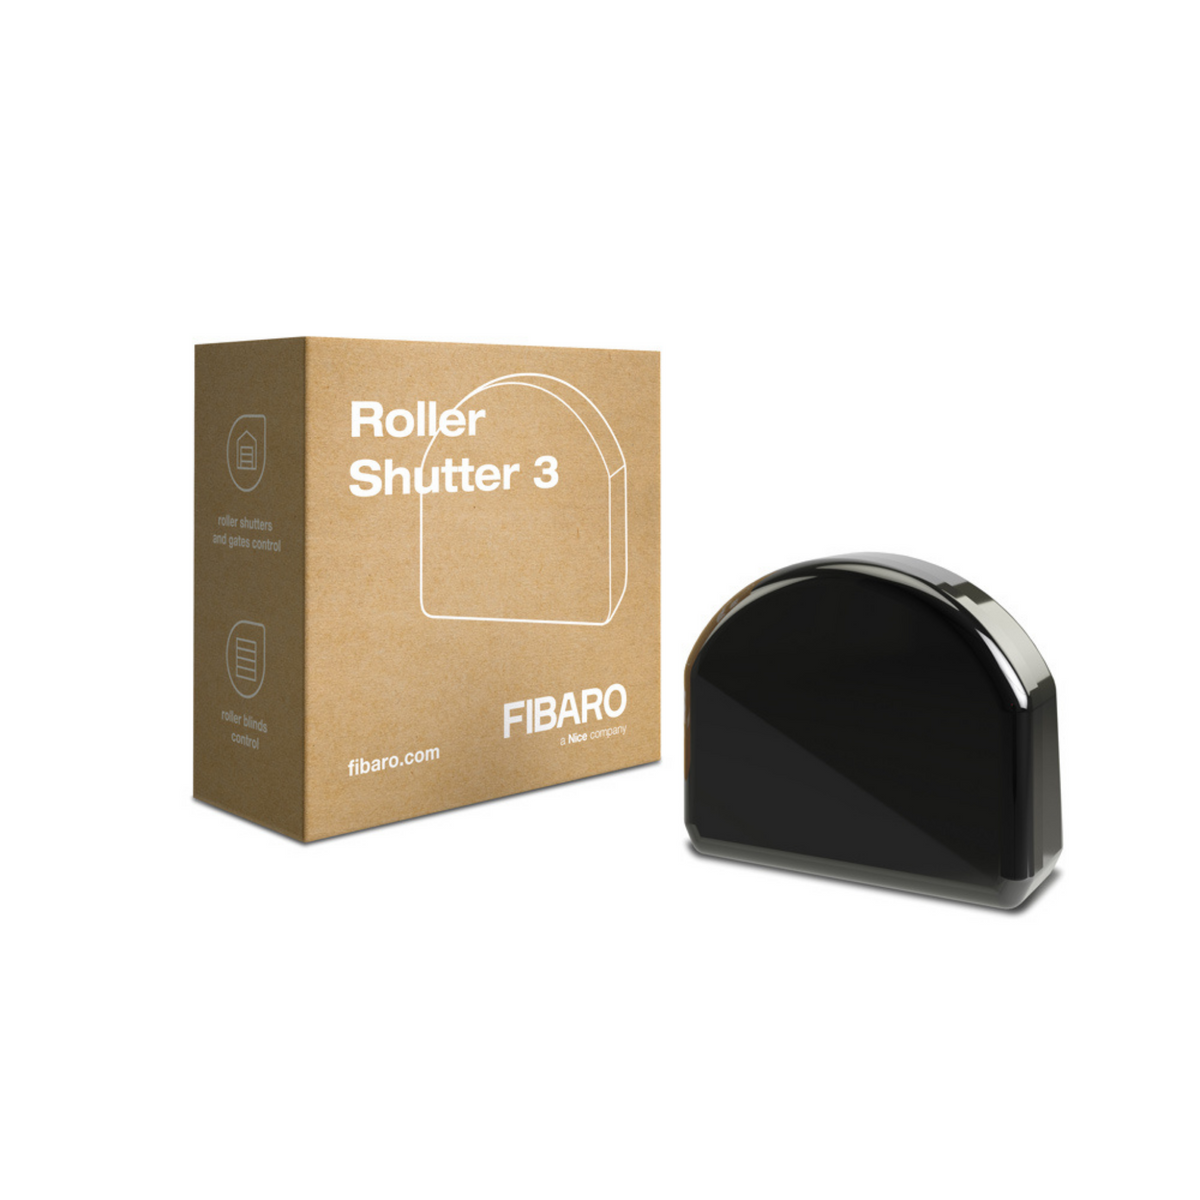 FIBARO Roller Shutter 3 - Blind, Curtain & Gate Controller